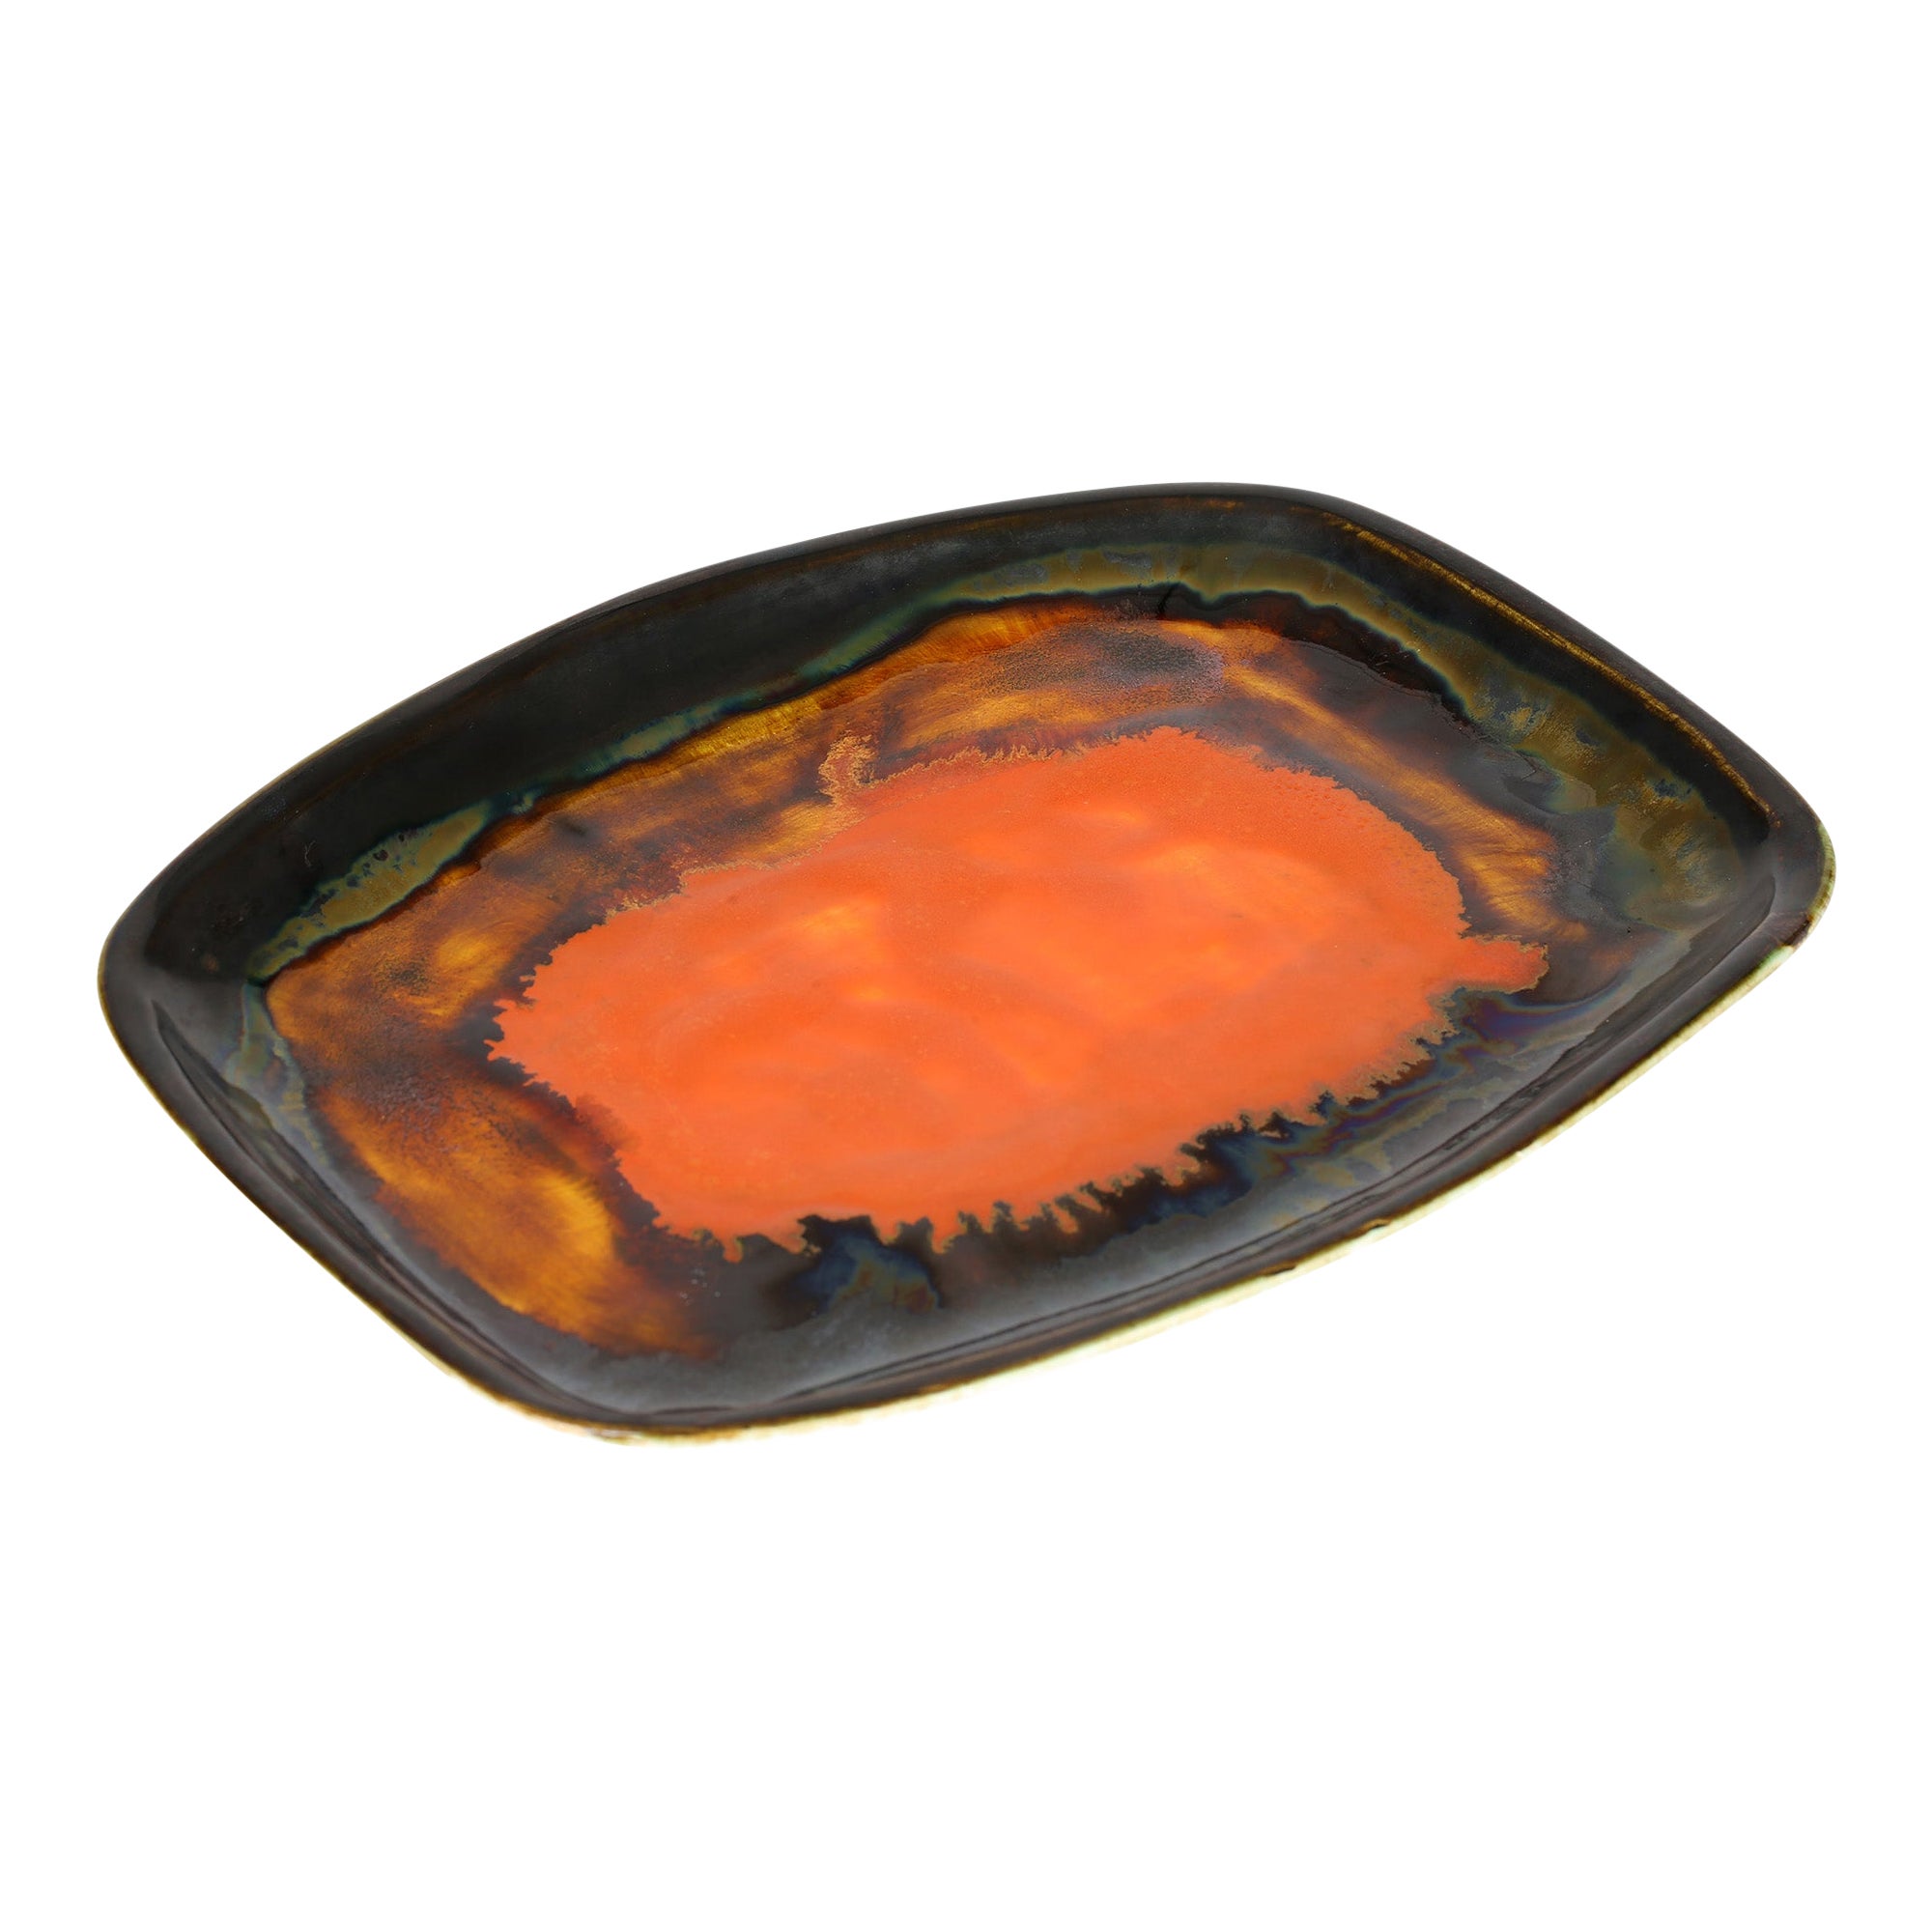 Orange glasiertes Tablett oder flache Schale von Eric Leaper Newlyn Studio Pottery